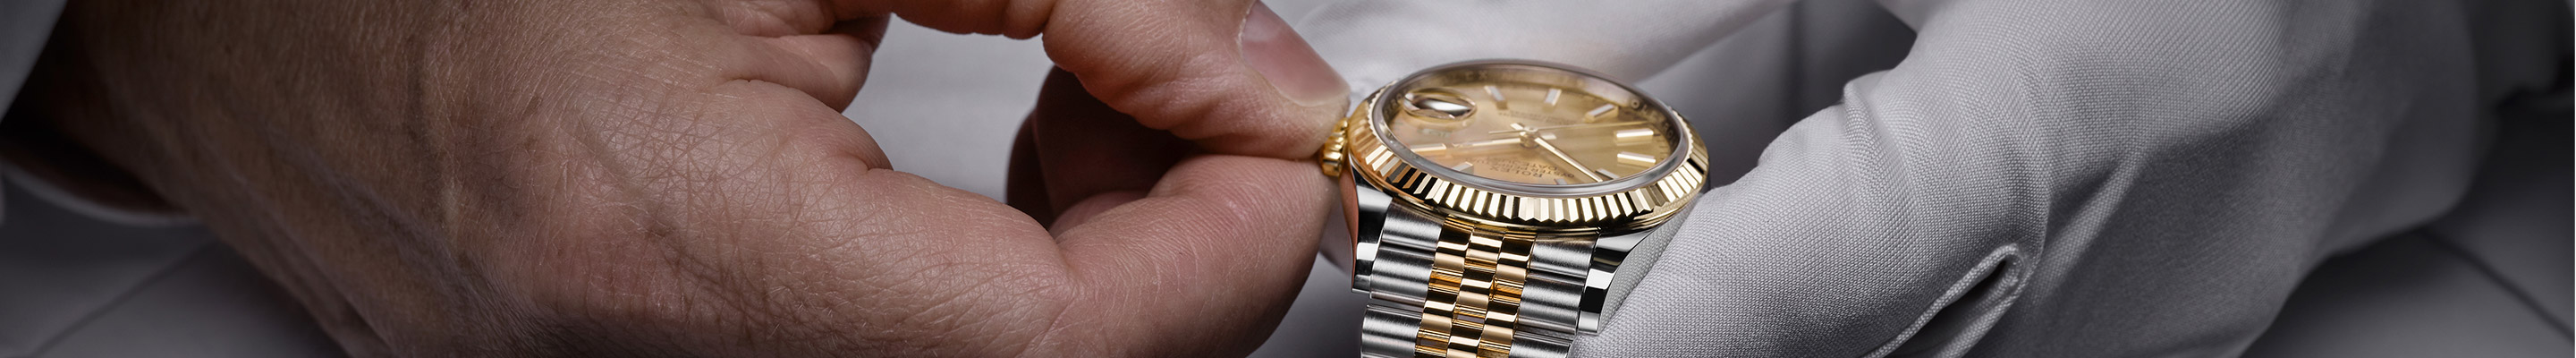 Rolex Watches in Antwerp